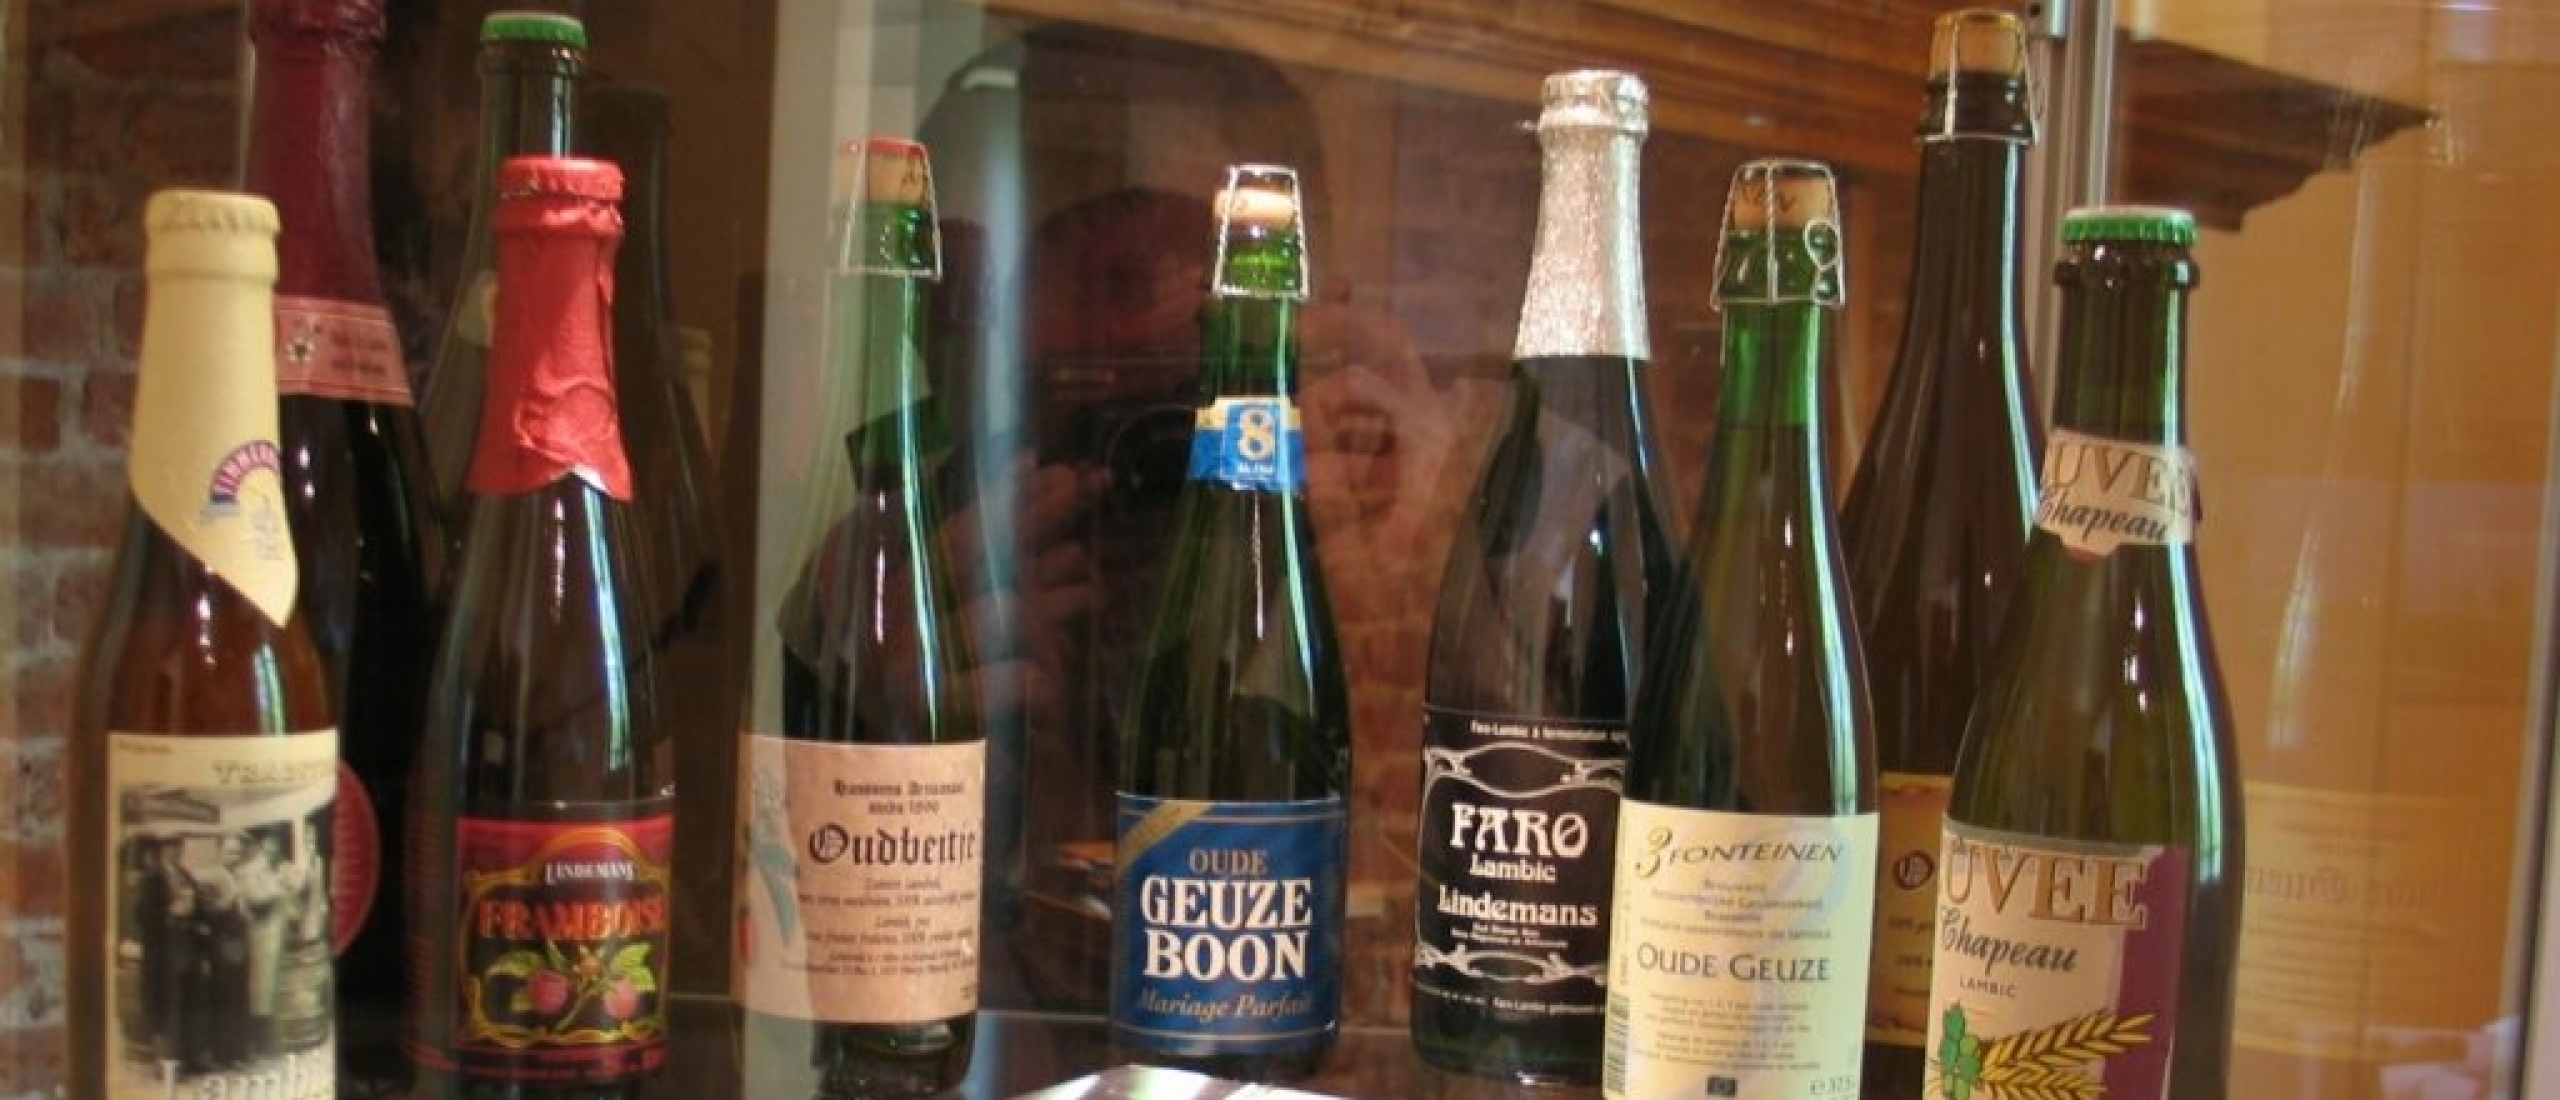 Belgische bieren en hun karakteristieke glazen